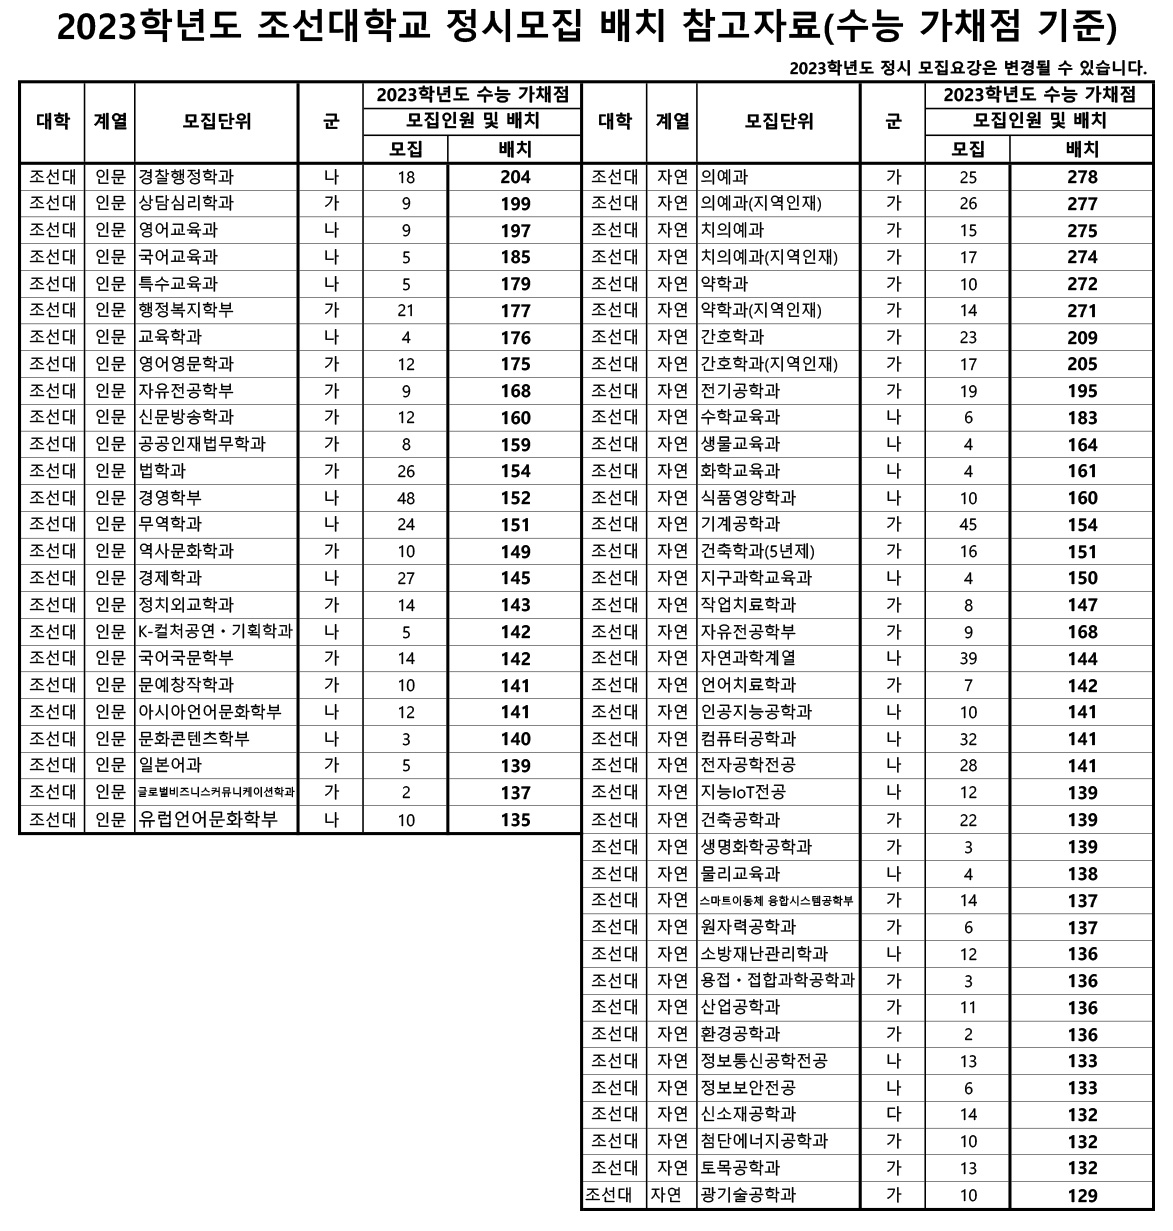 2023학년도 조선대학교 정시모집 배치 참고자료(수능 가채점 기준) 